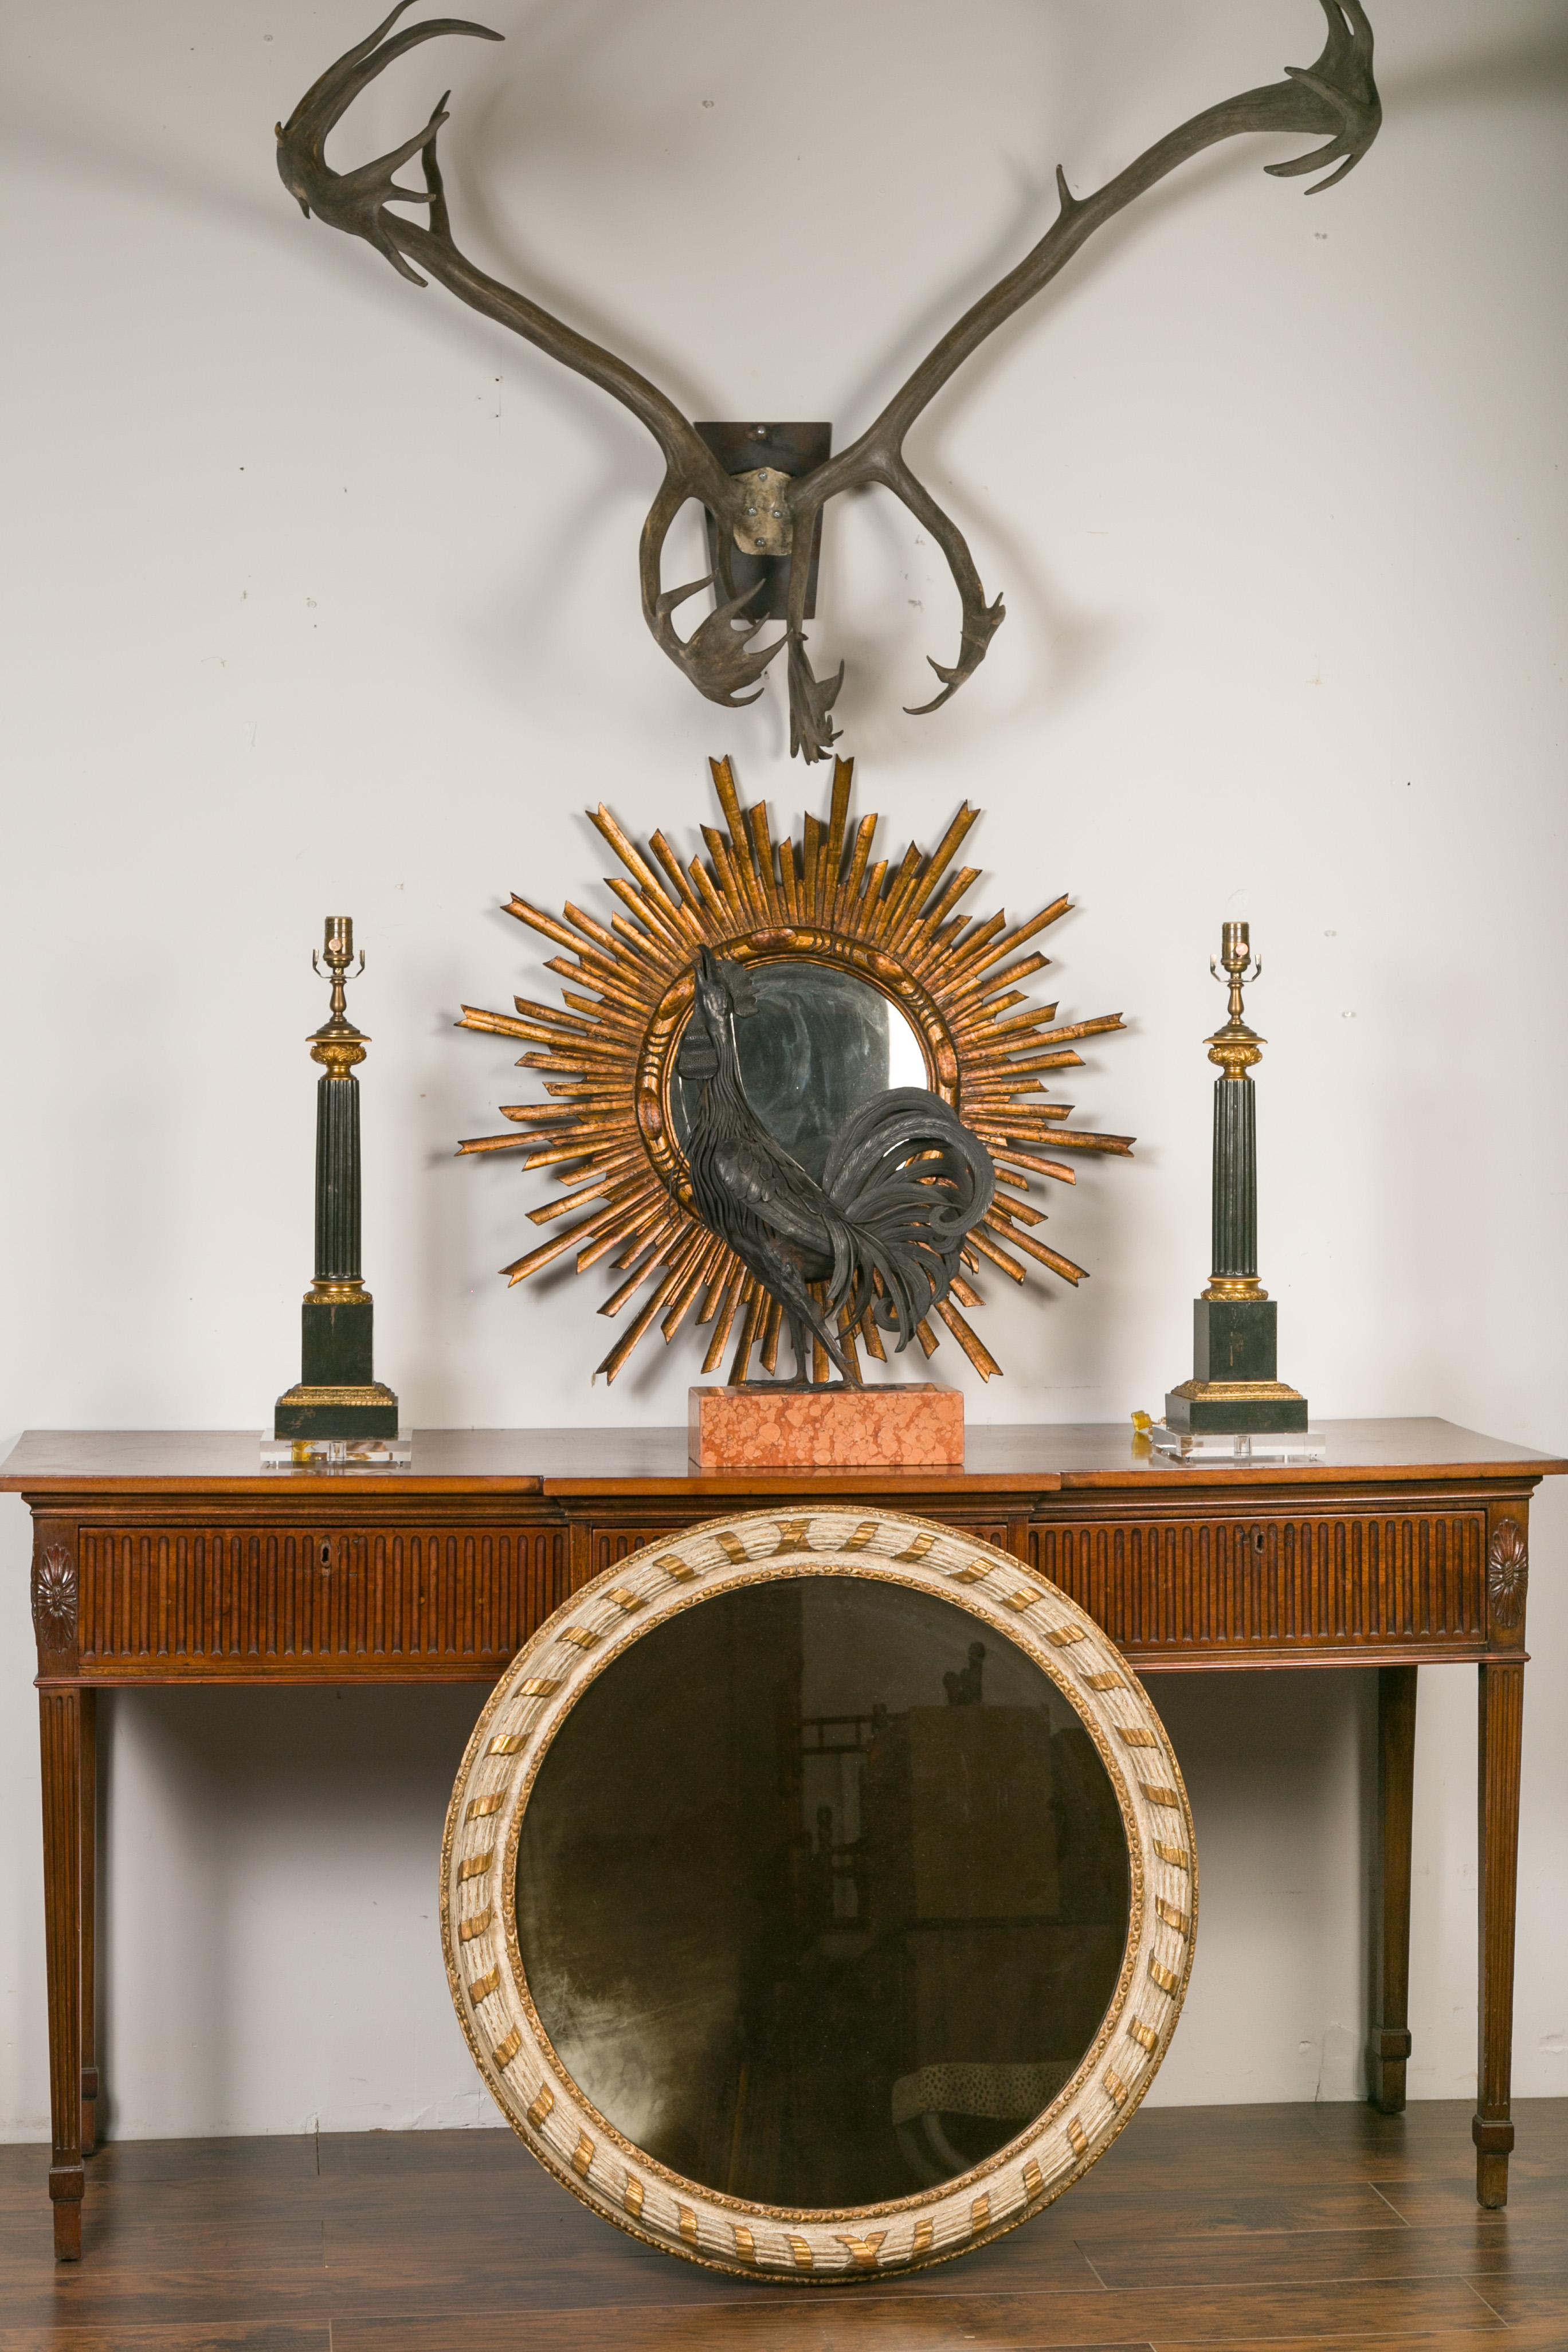 Miroir circulaire italien sculpté, doré et peint, datant de la fin du XIXe siècle, à motif de rubans. Créé en Italie dans le dernier quart du XIXe siècle, ce miroir présente un cadre cannelé de couleur crème souligné de motifs dorés et sculpté d'un